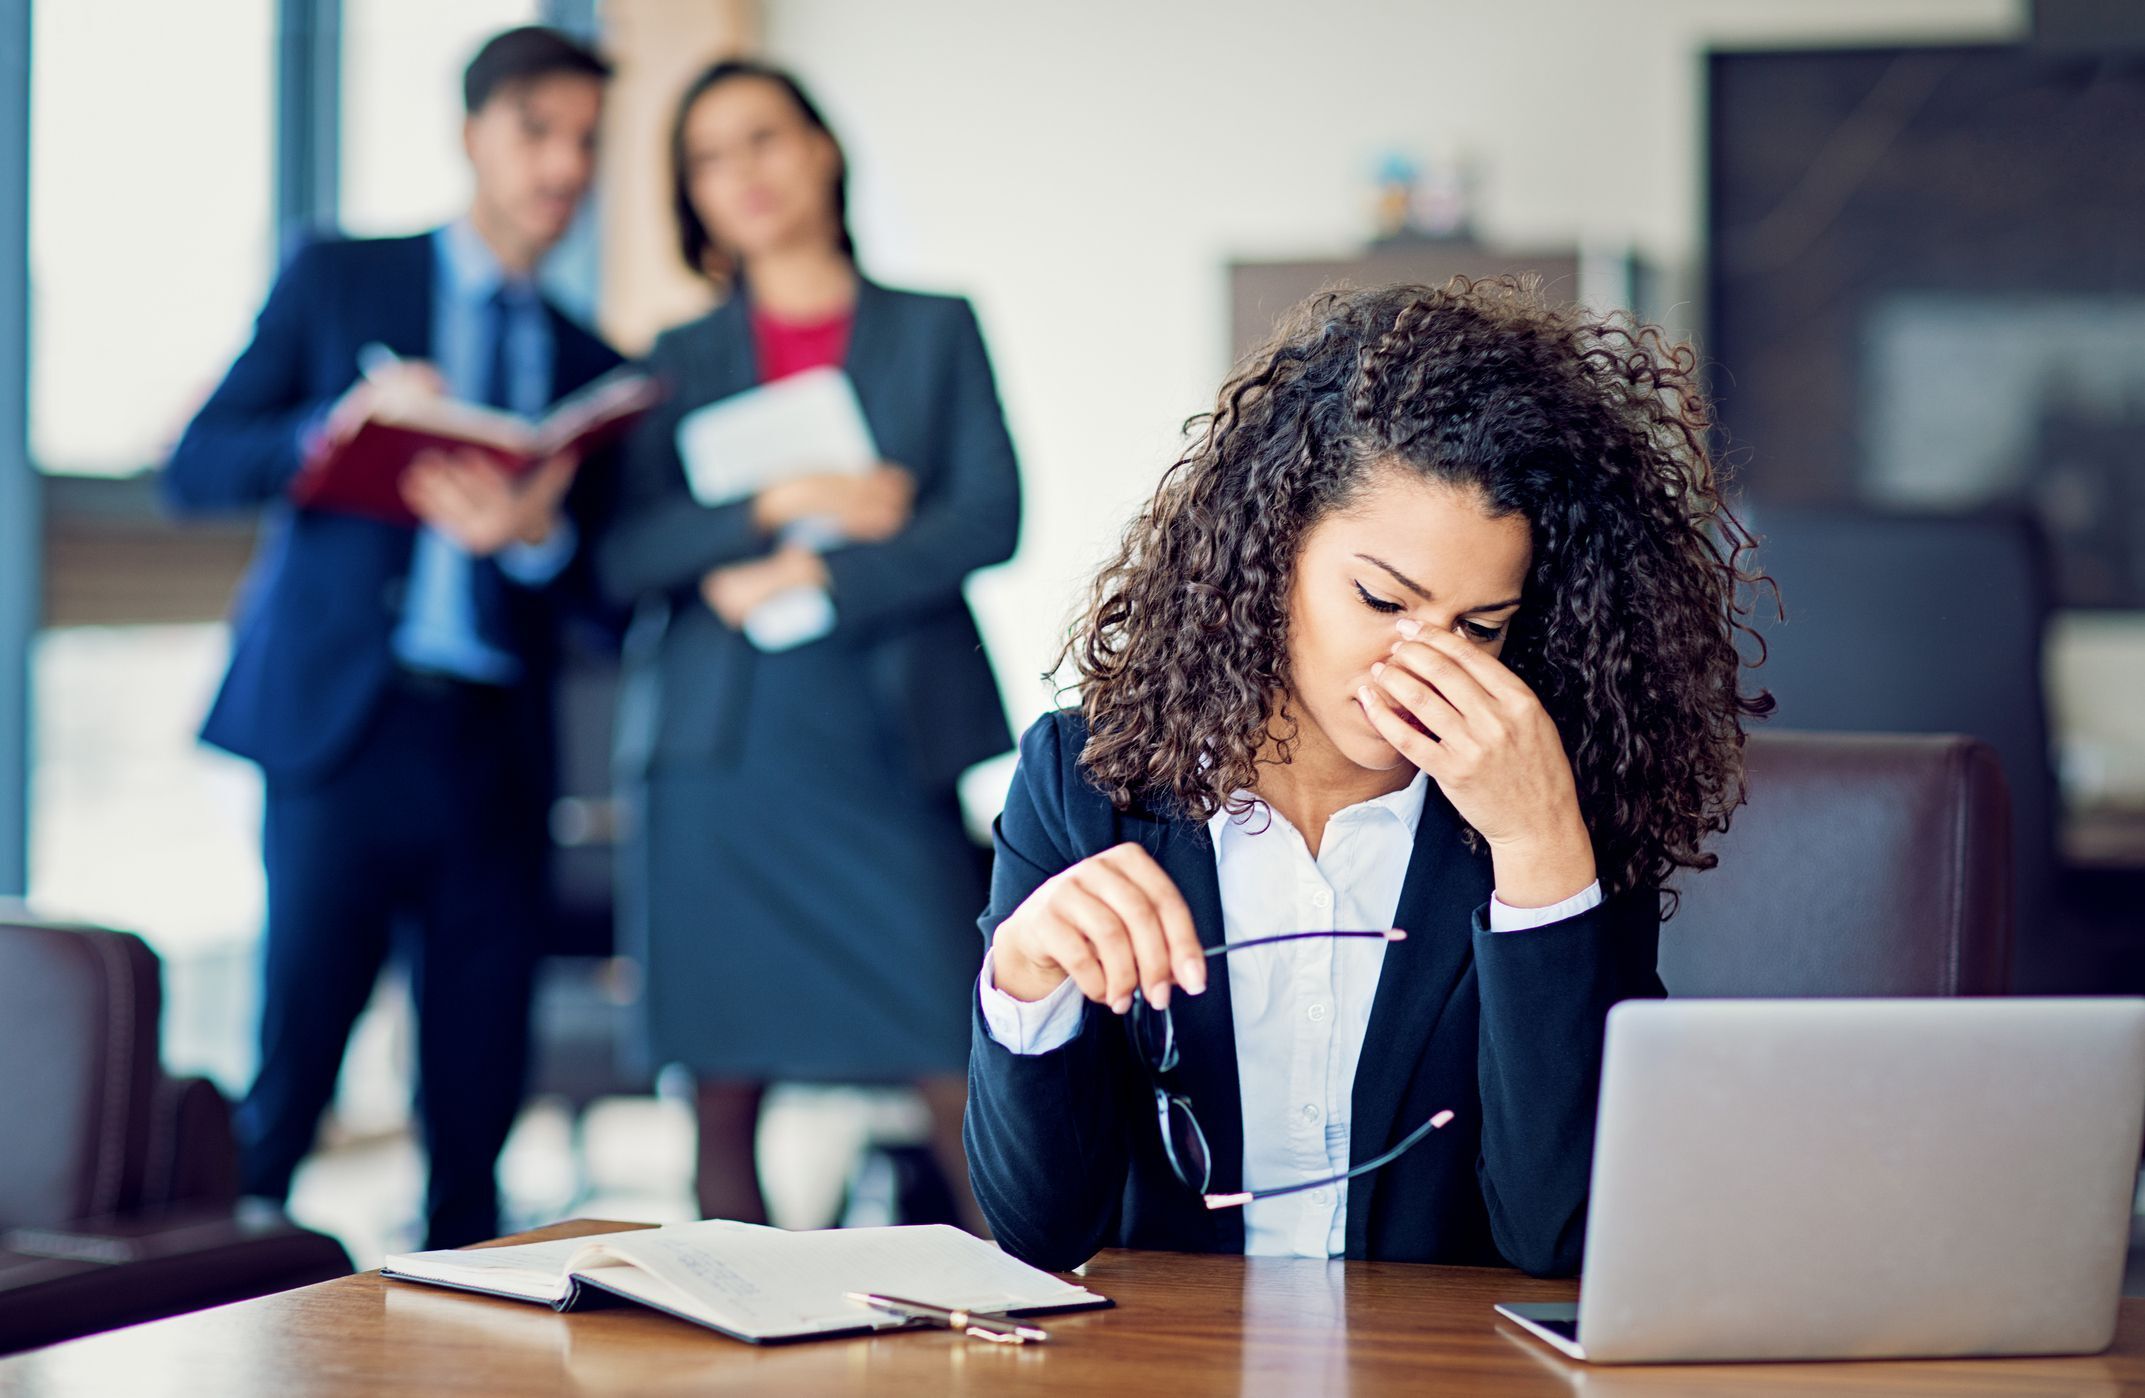 Почему люди чаще всего игнорируют издевательства на работе над их коллегами